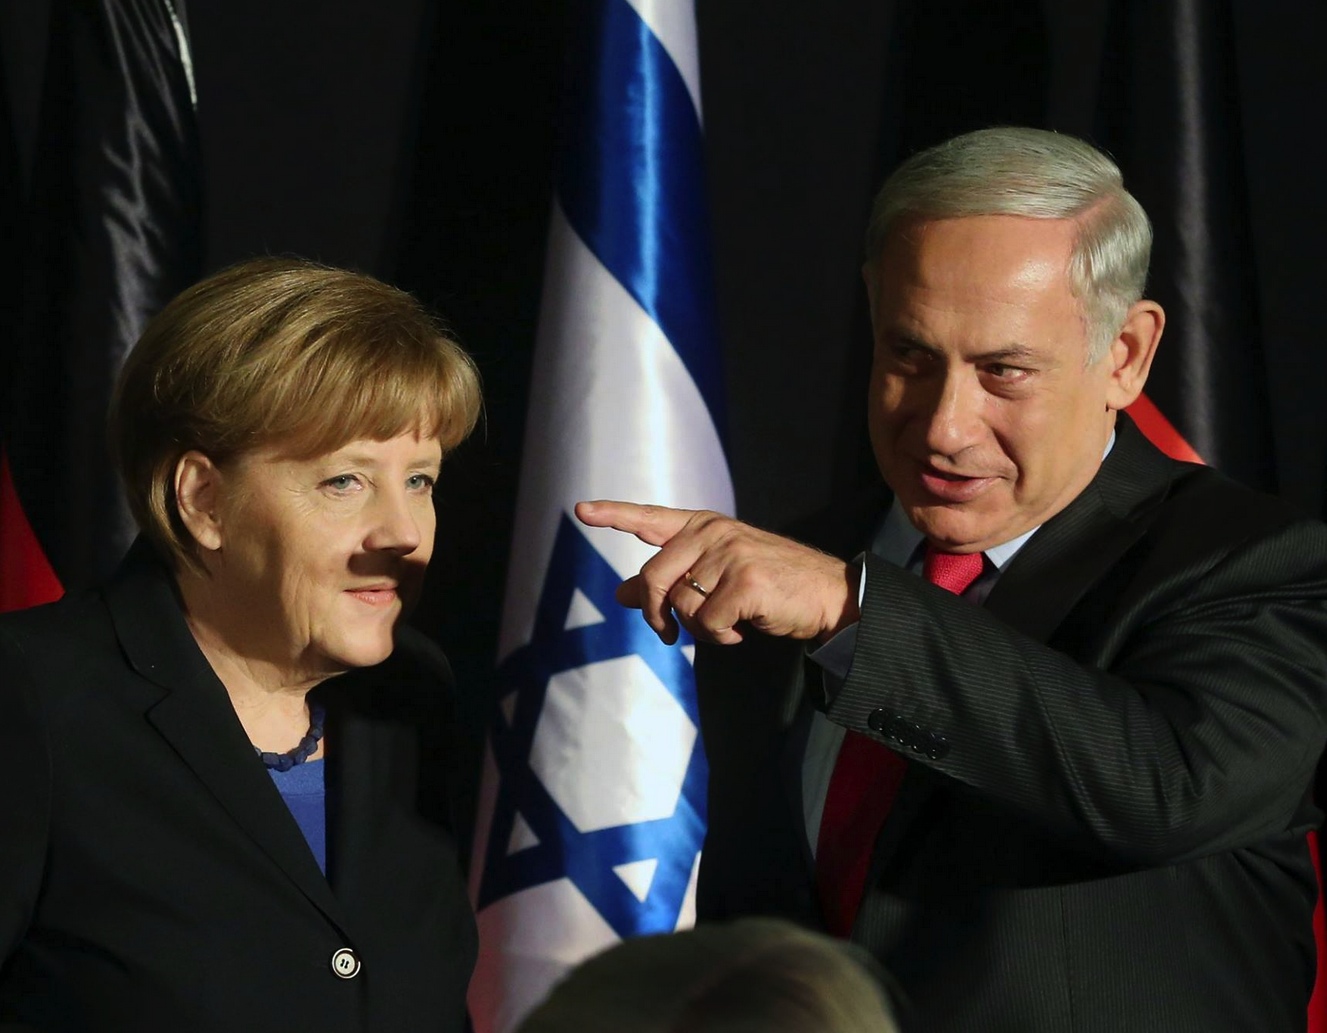 Πιστεύει και ο πρωθυπουργός του Ισραήλ Νετανιάχου ότι η Μέρκελ είναι ο «νέος Χίτλερ»;